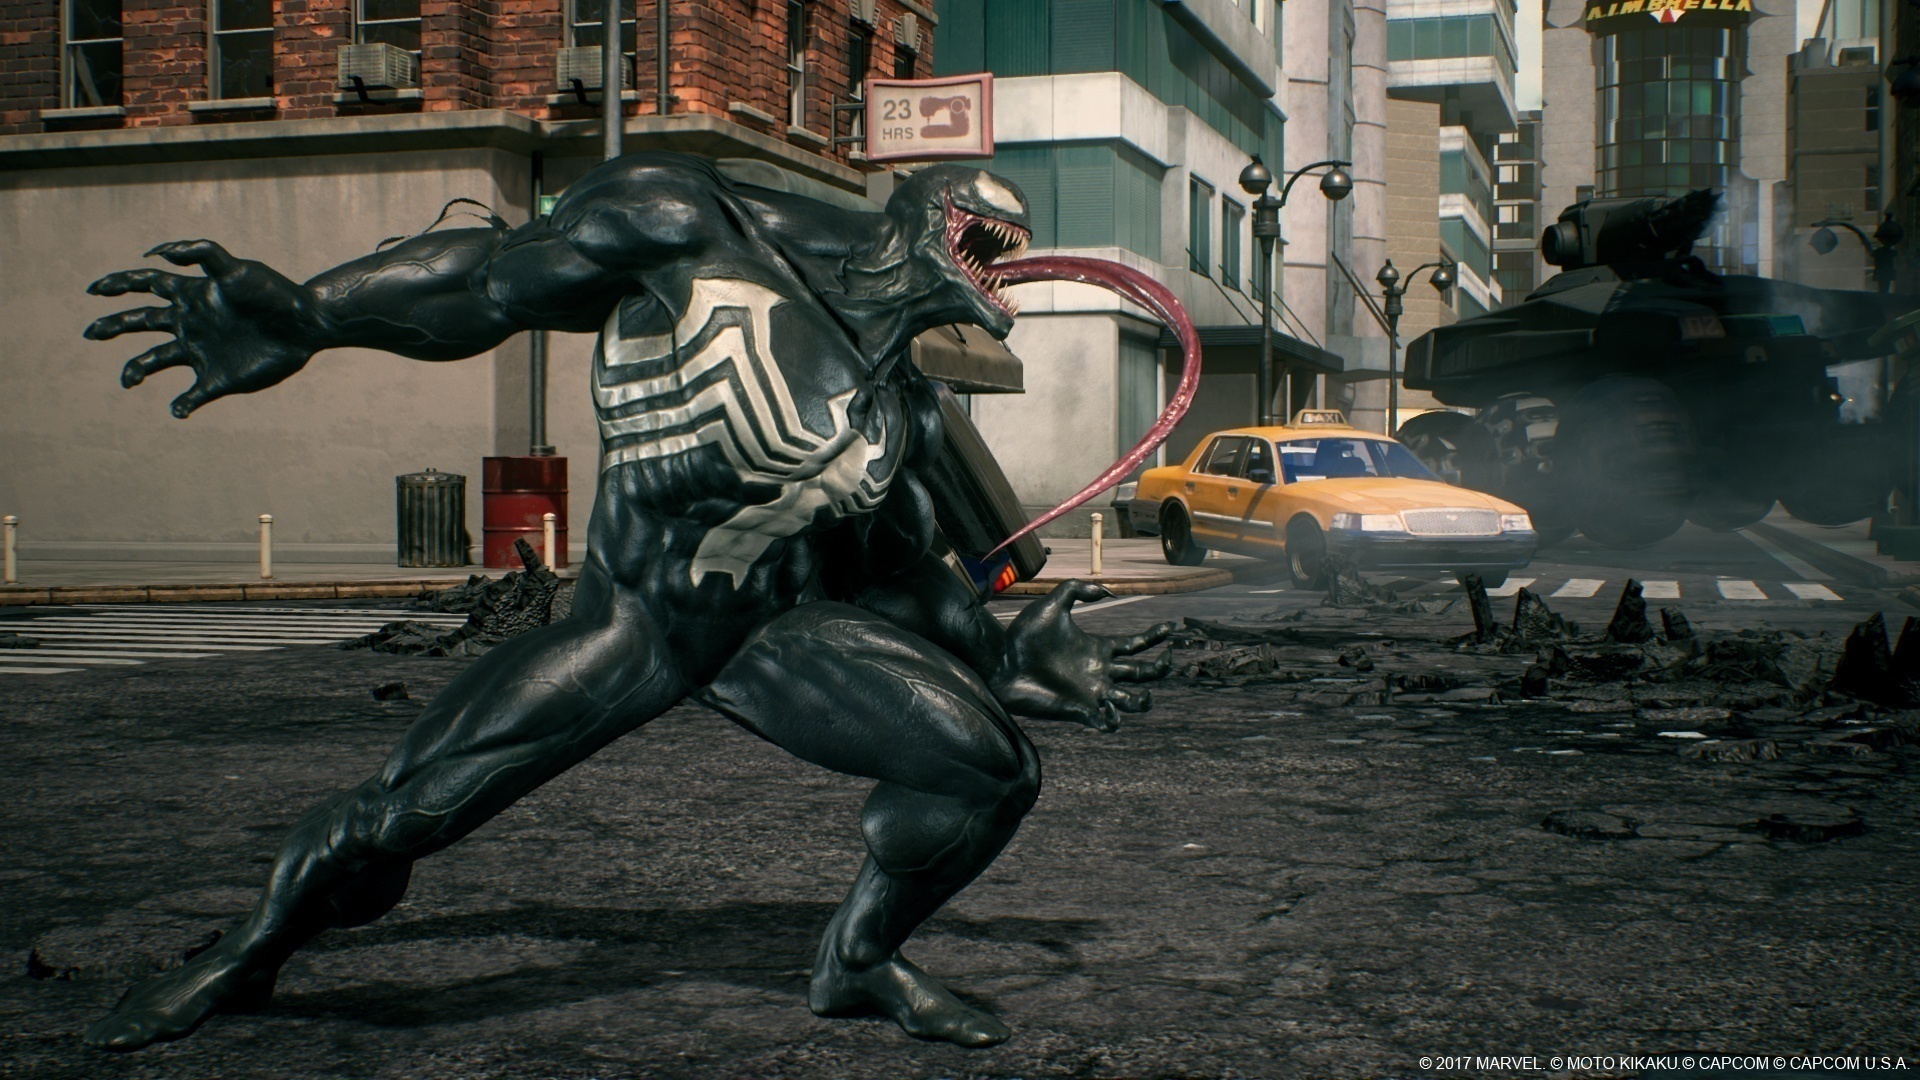 Venom looks fantastic in Marvel vs Capcom: Infinite, due December 5